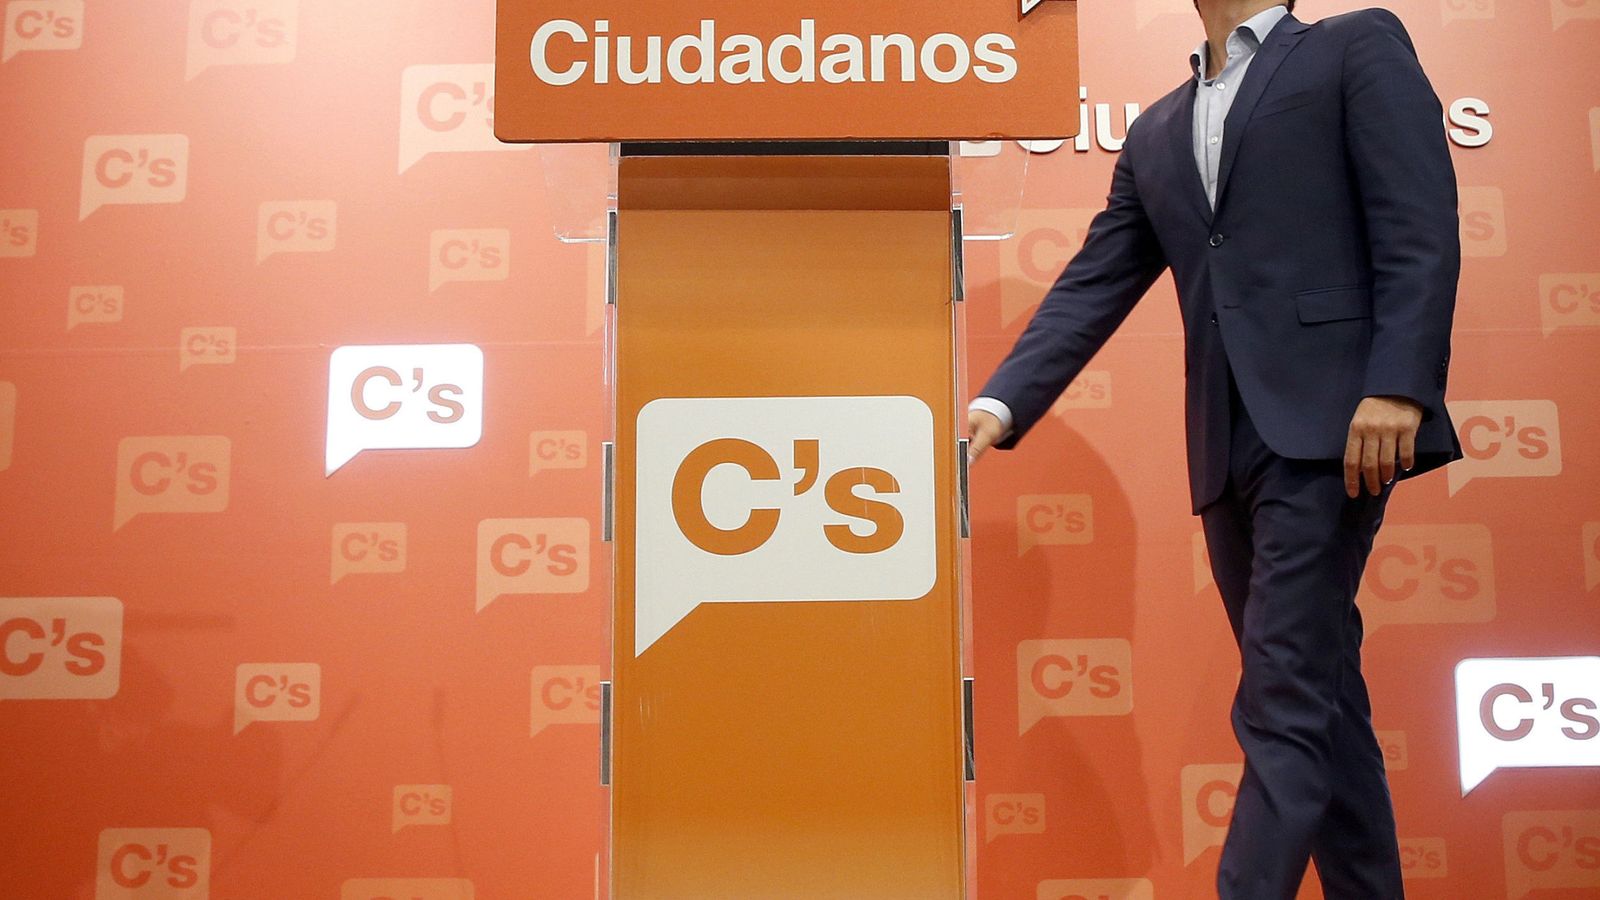 Foto: El líder de Ciudadanos, Albert Rivera, comparece en rueda de prensa en la sede del partido en Madrid. (EFE)